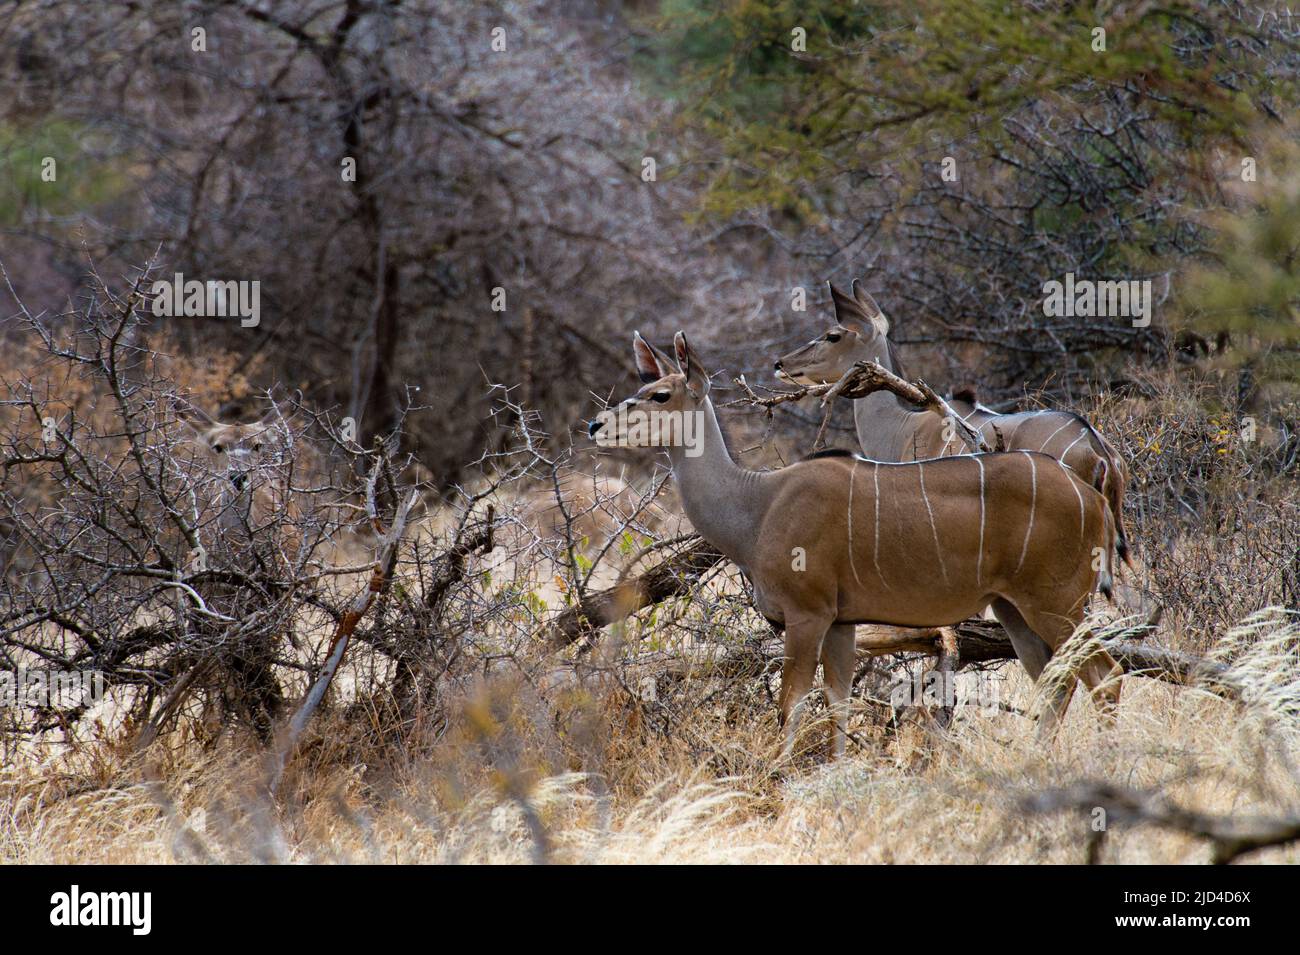 Females greater kudu (Tragelaphus strepsiceros) from Samburu NR, Kenya. Stock Photo